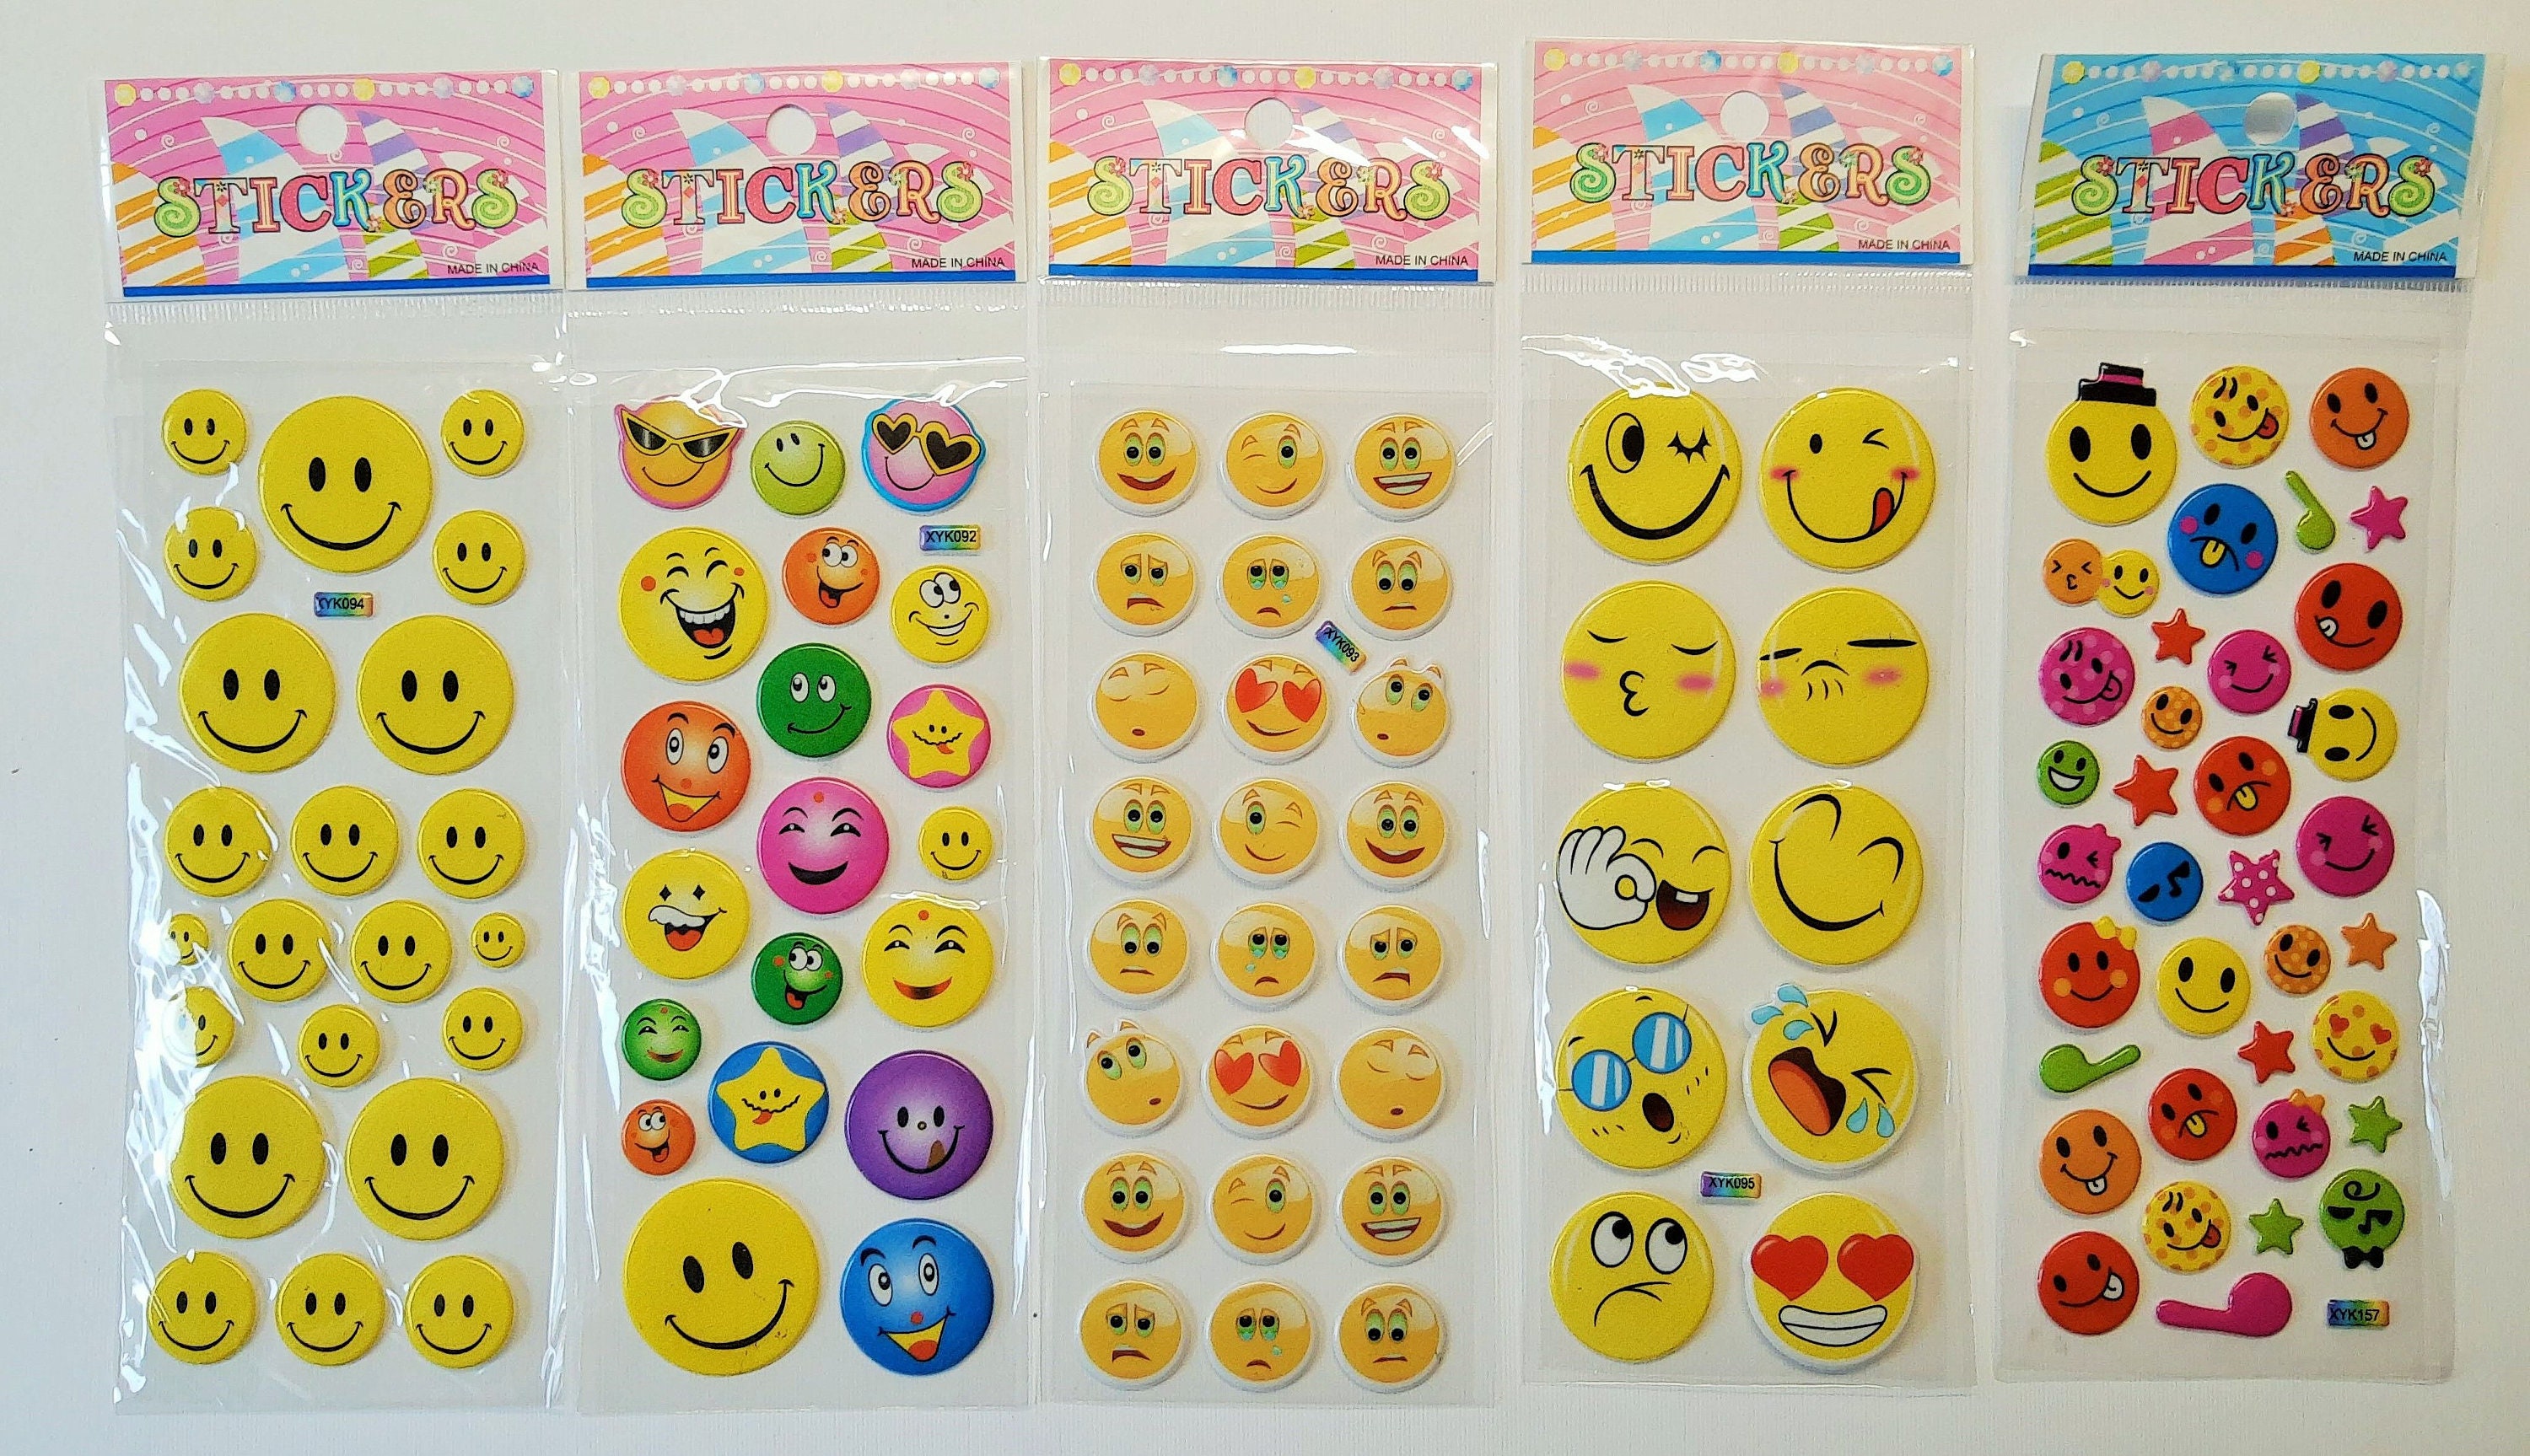 Puffy-Sticker, Emotion, Smileys, 10 x 15 cm, Verschiedene Motive, Sticker, Bastelbedarf